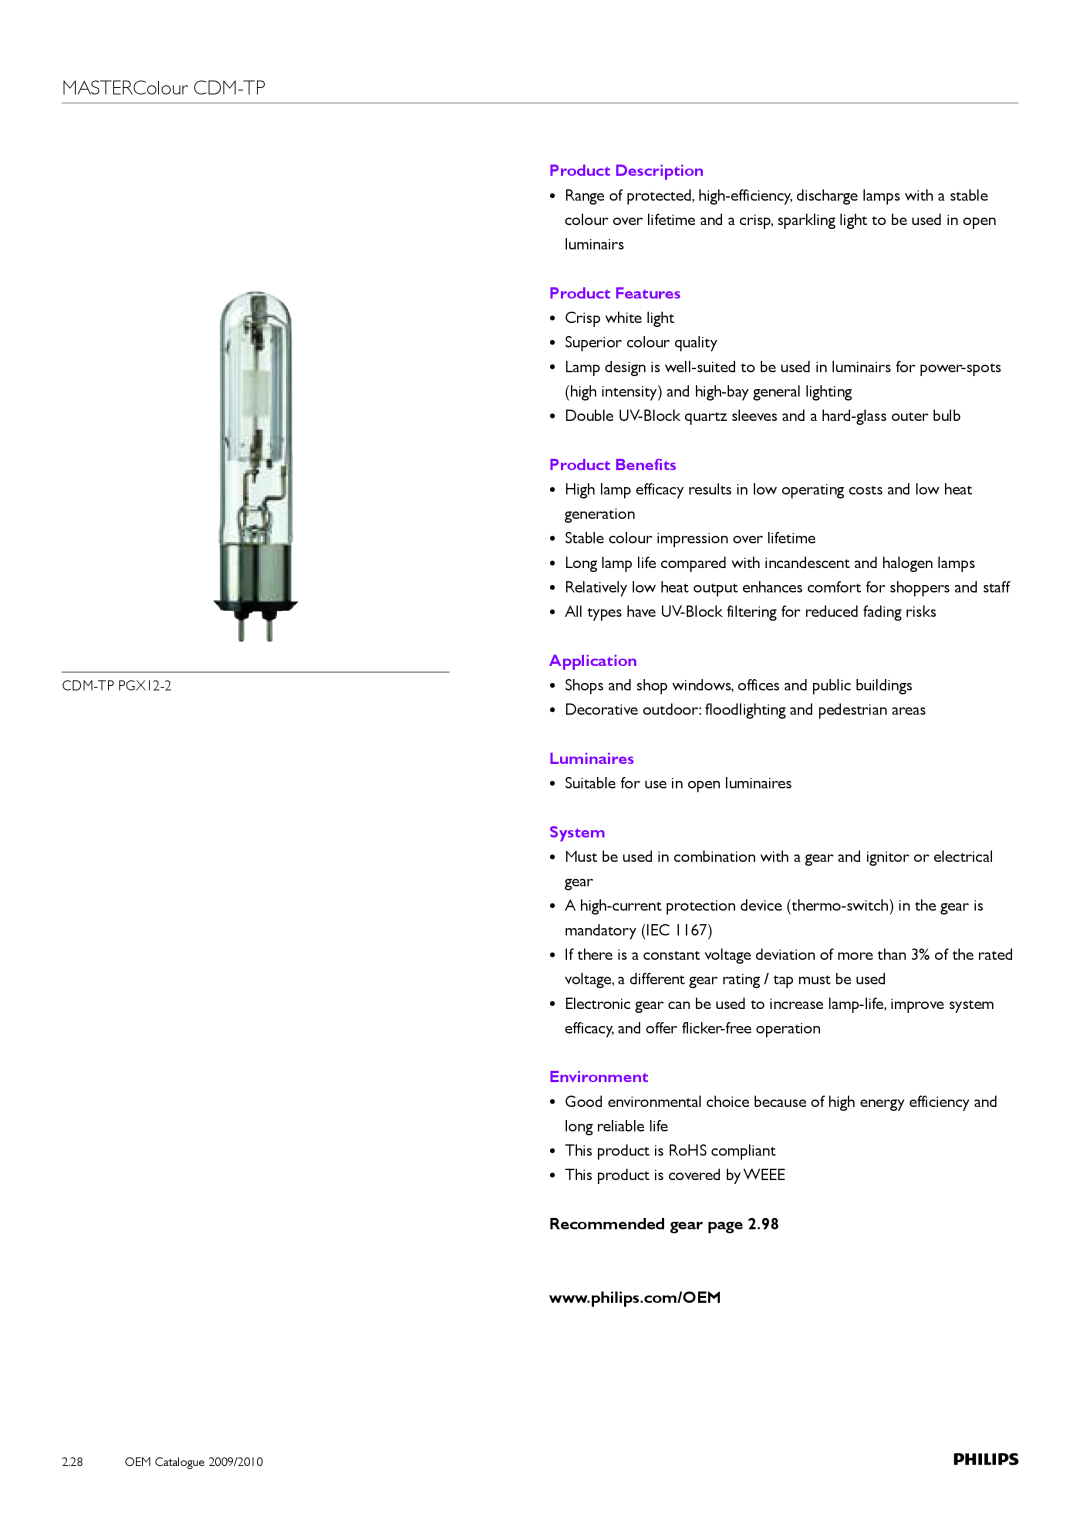 Philips Compact HID Lamp and Gear MASTERColour CDM-TP, Product Description, Product Features Crisp white light, Luminaires 